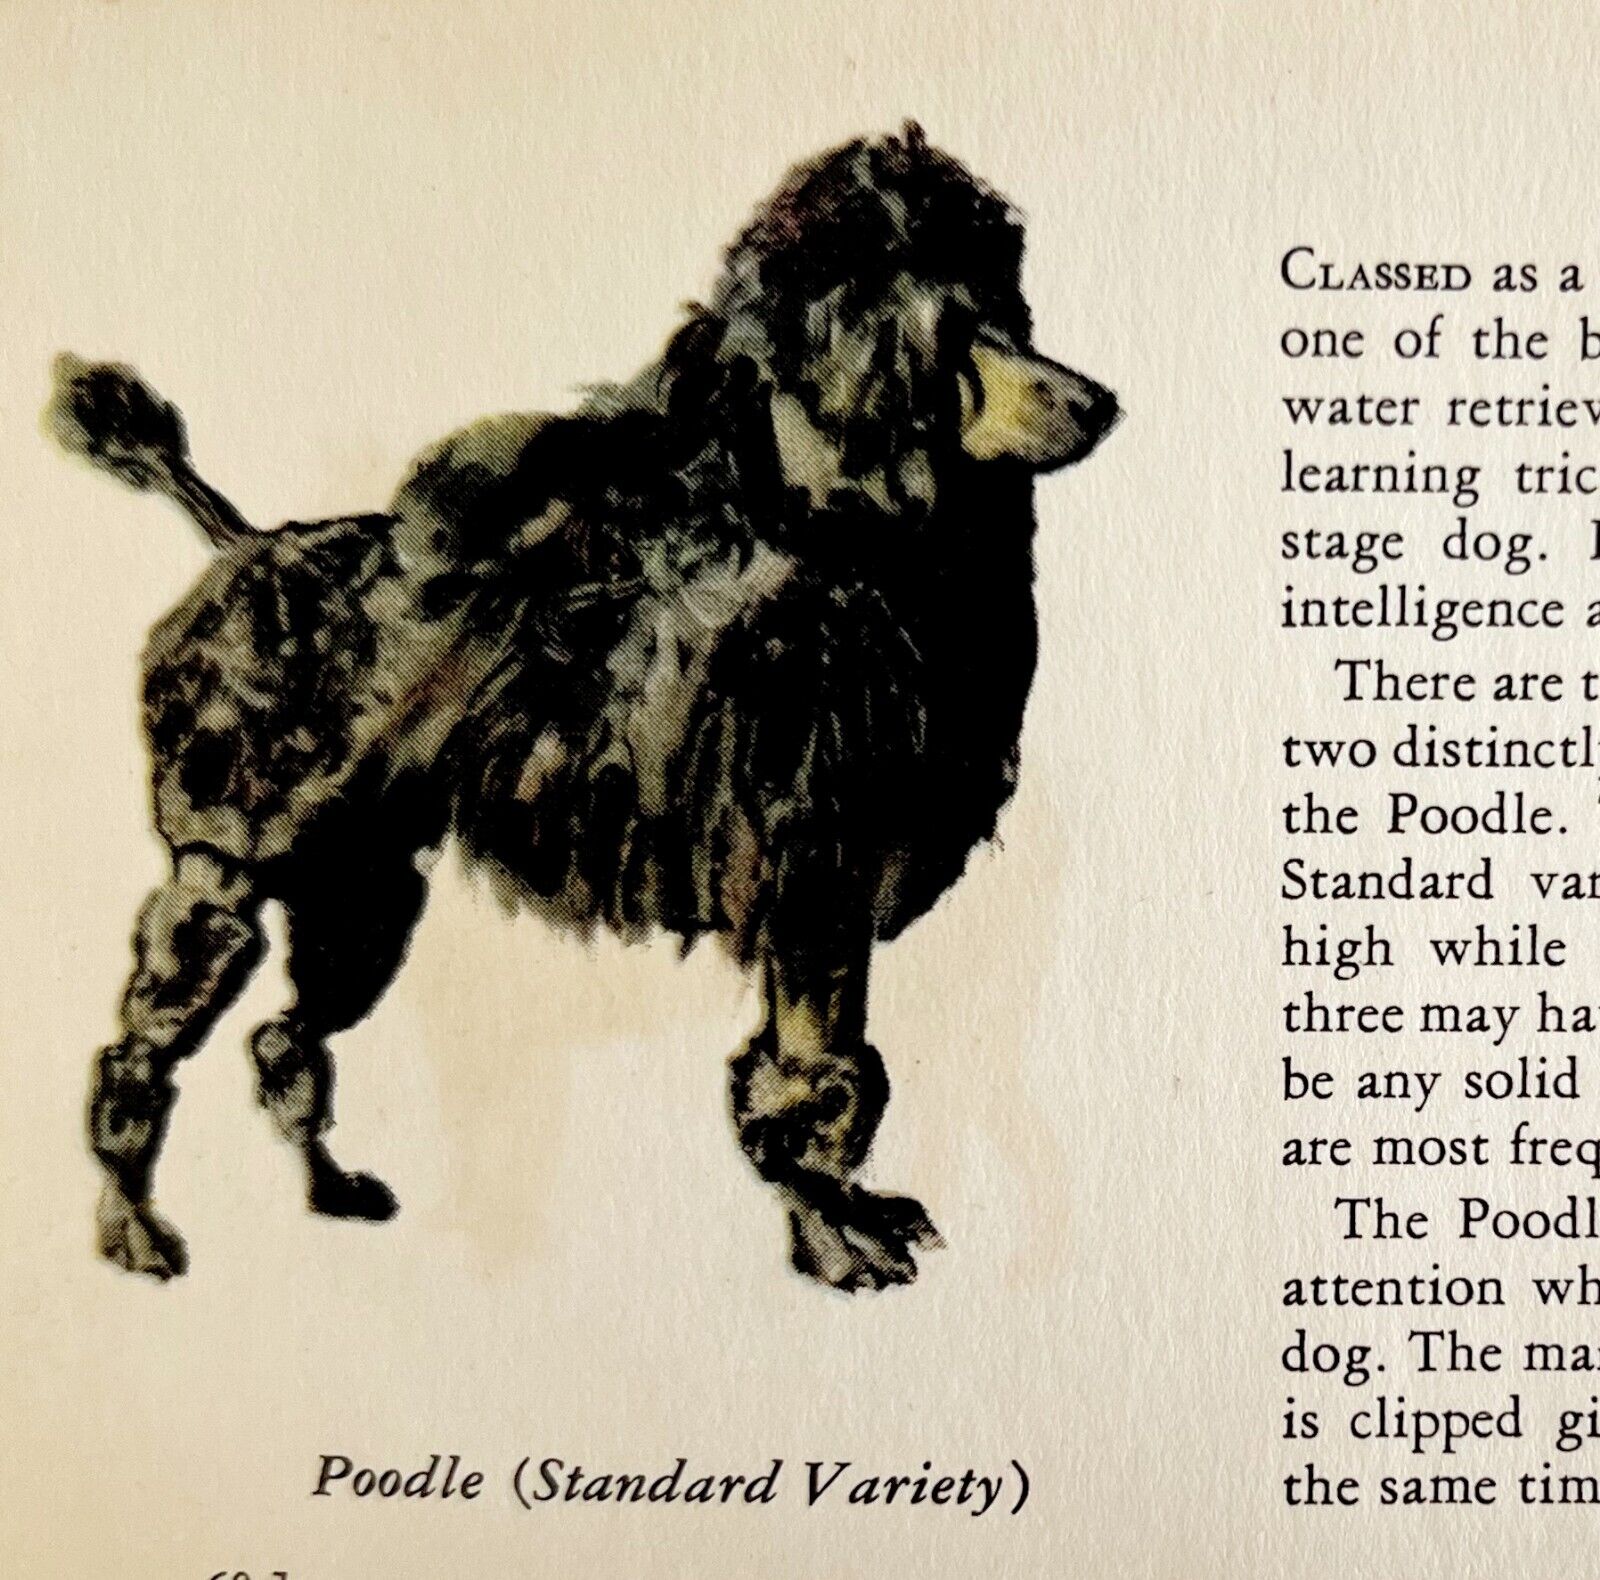 Standard Poodle 1939 Dog Breed Art Ole Larsen Color Plate Print Antique PCBG18